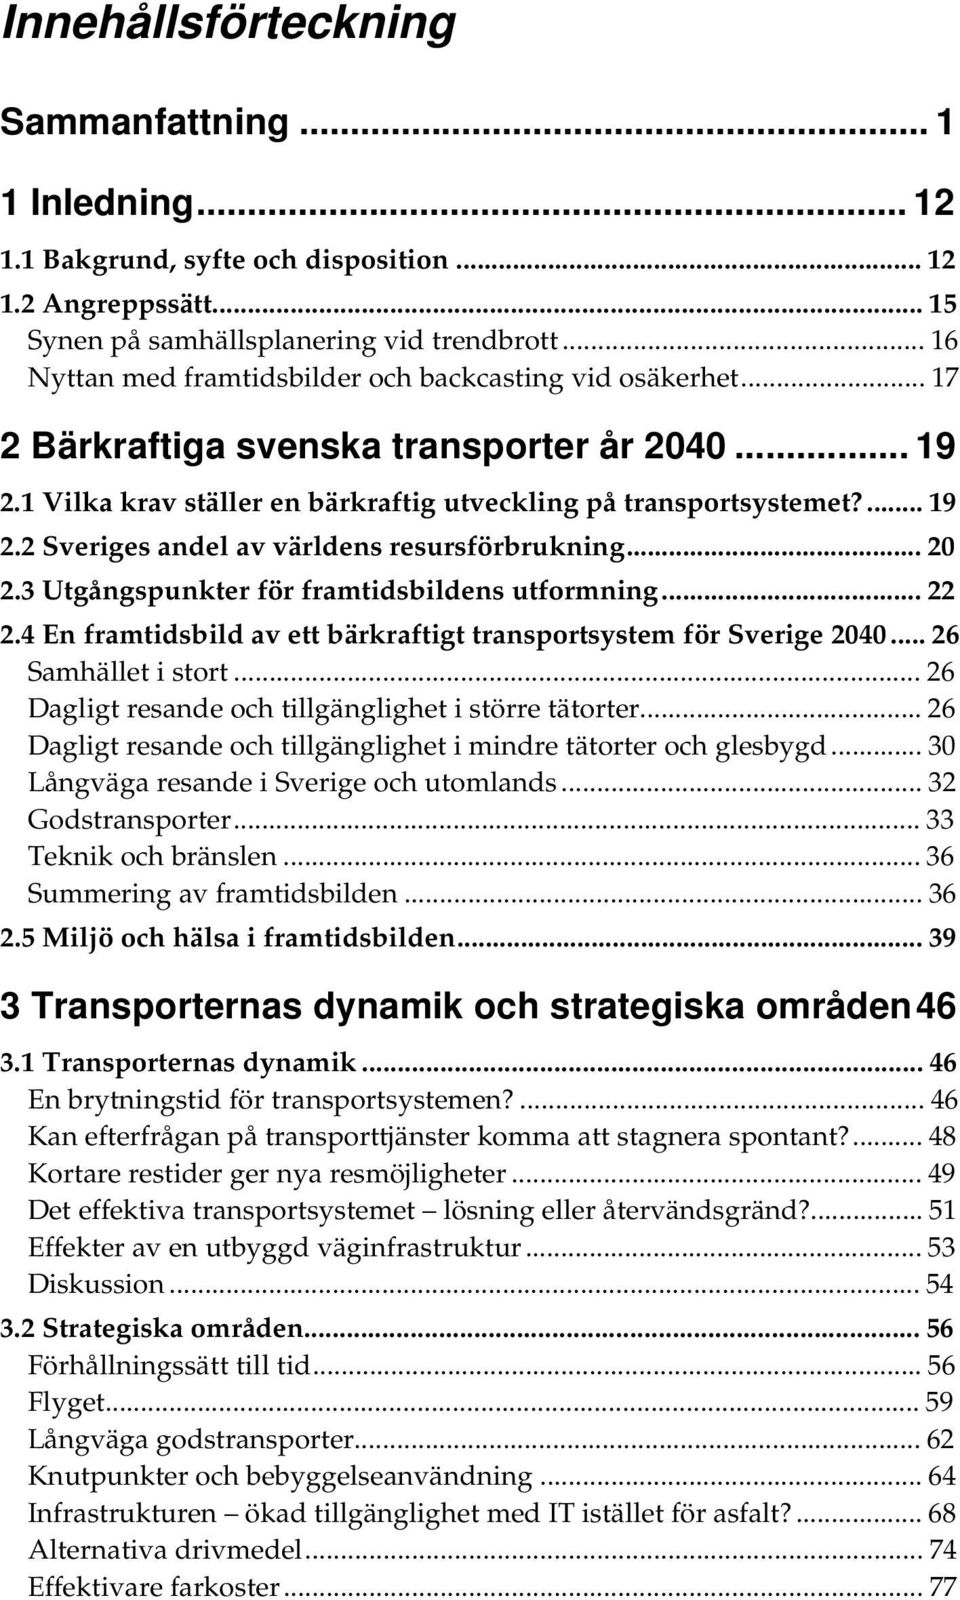 .. 20 2.3 Utgångspunkter för framtidsbildens utformning... 22 2.4 En framtidsbild av ett bärkraftigt transportsystem för Sverige 2040... 26 Samhället i stort.